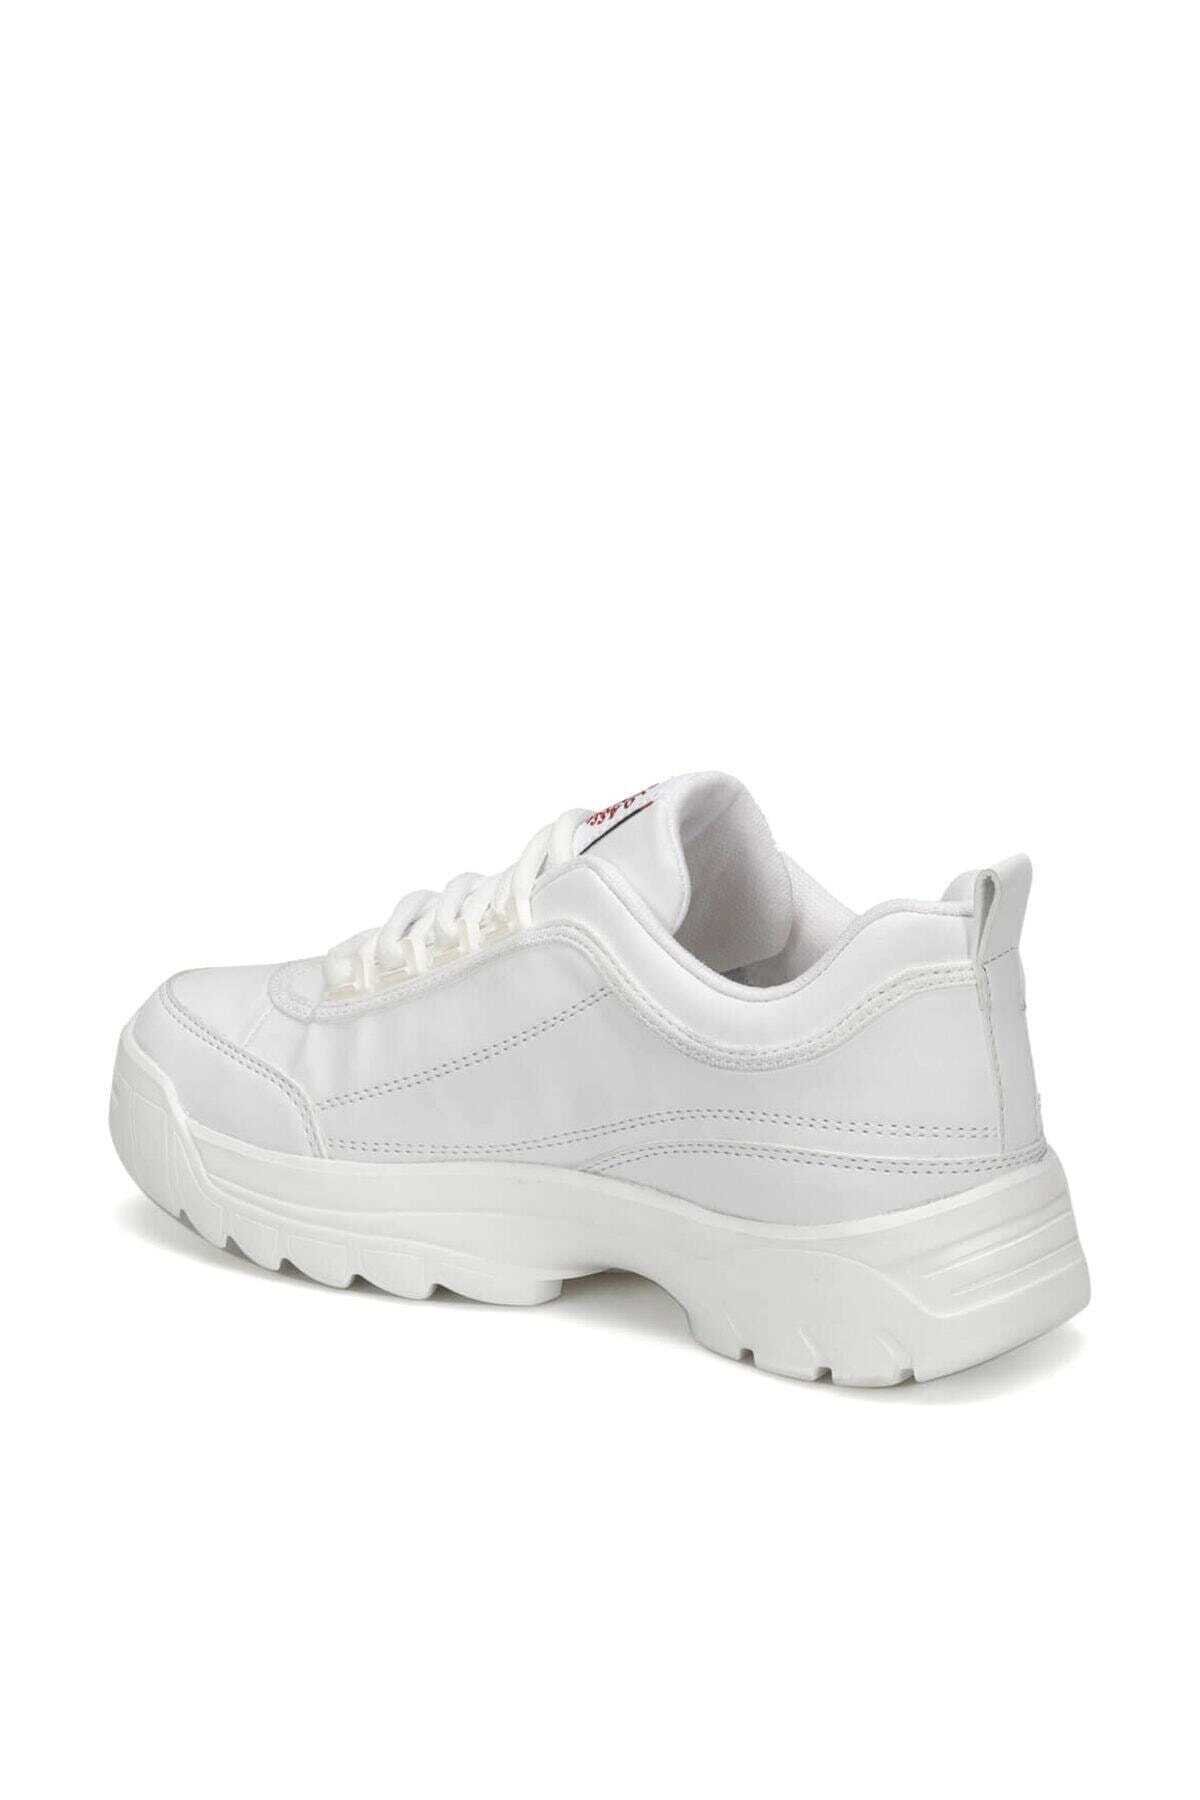 کفش کتانی زنانه سفید سری MEIKO 9PR 100418022 سفید برند U.S. Polo Assn